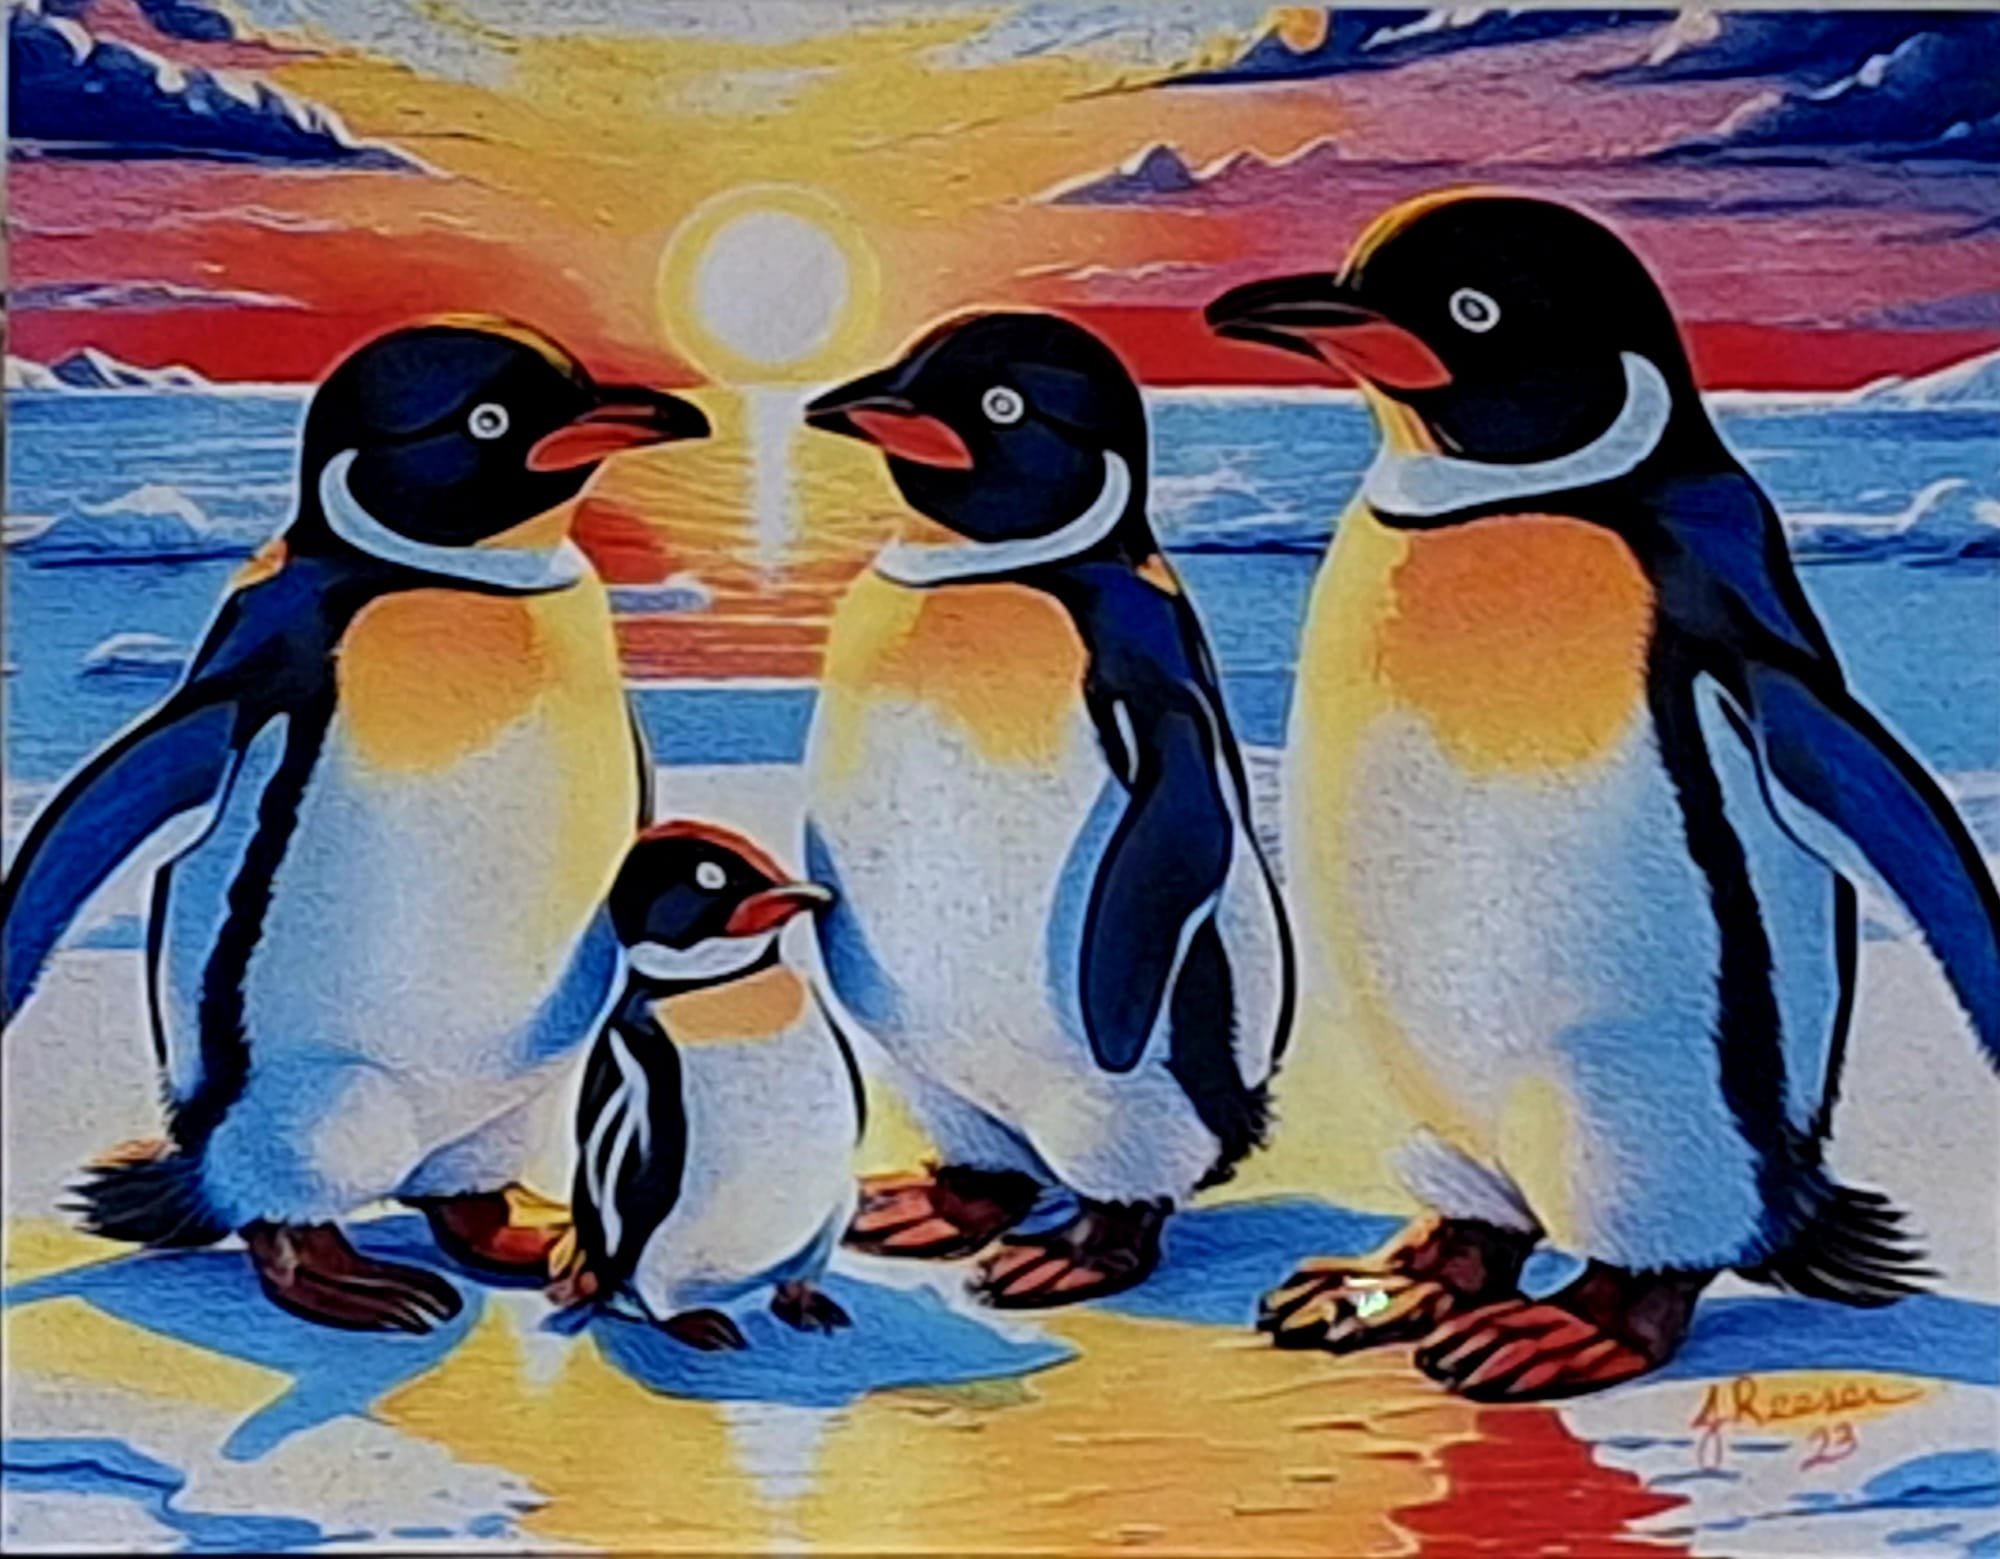 The Penguin family